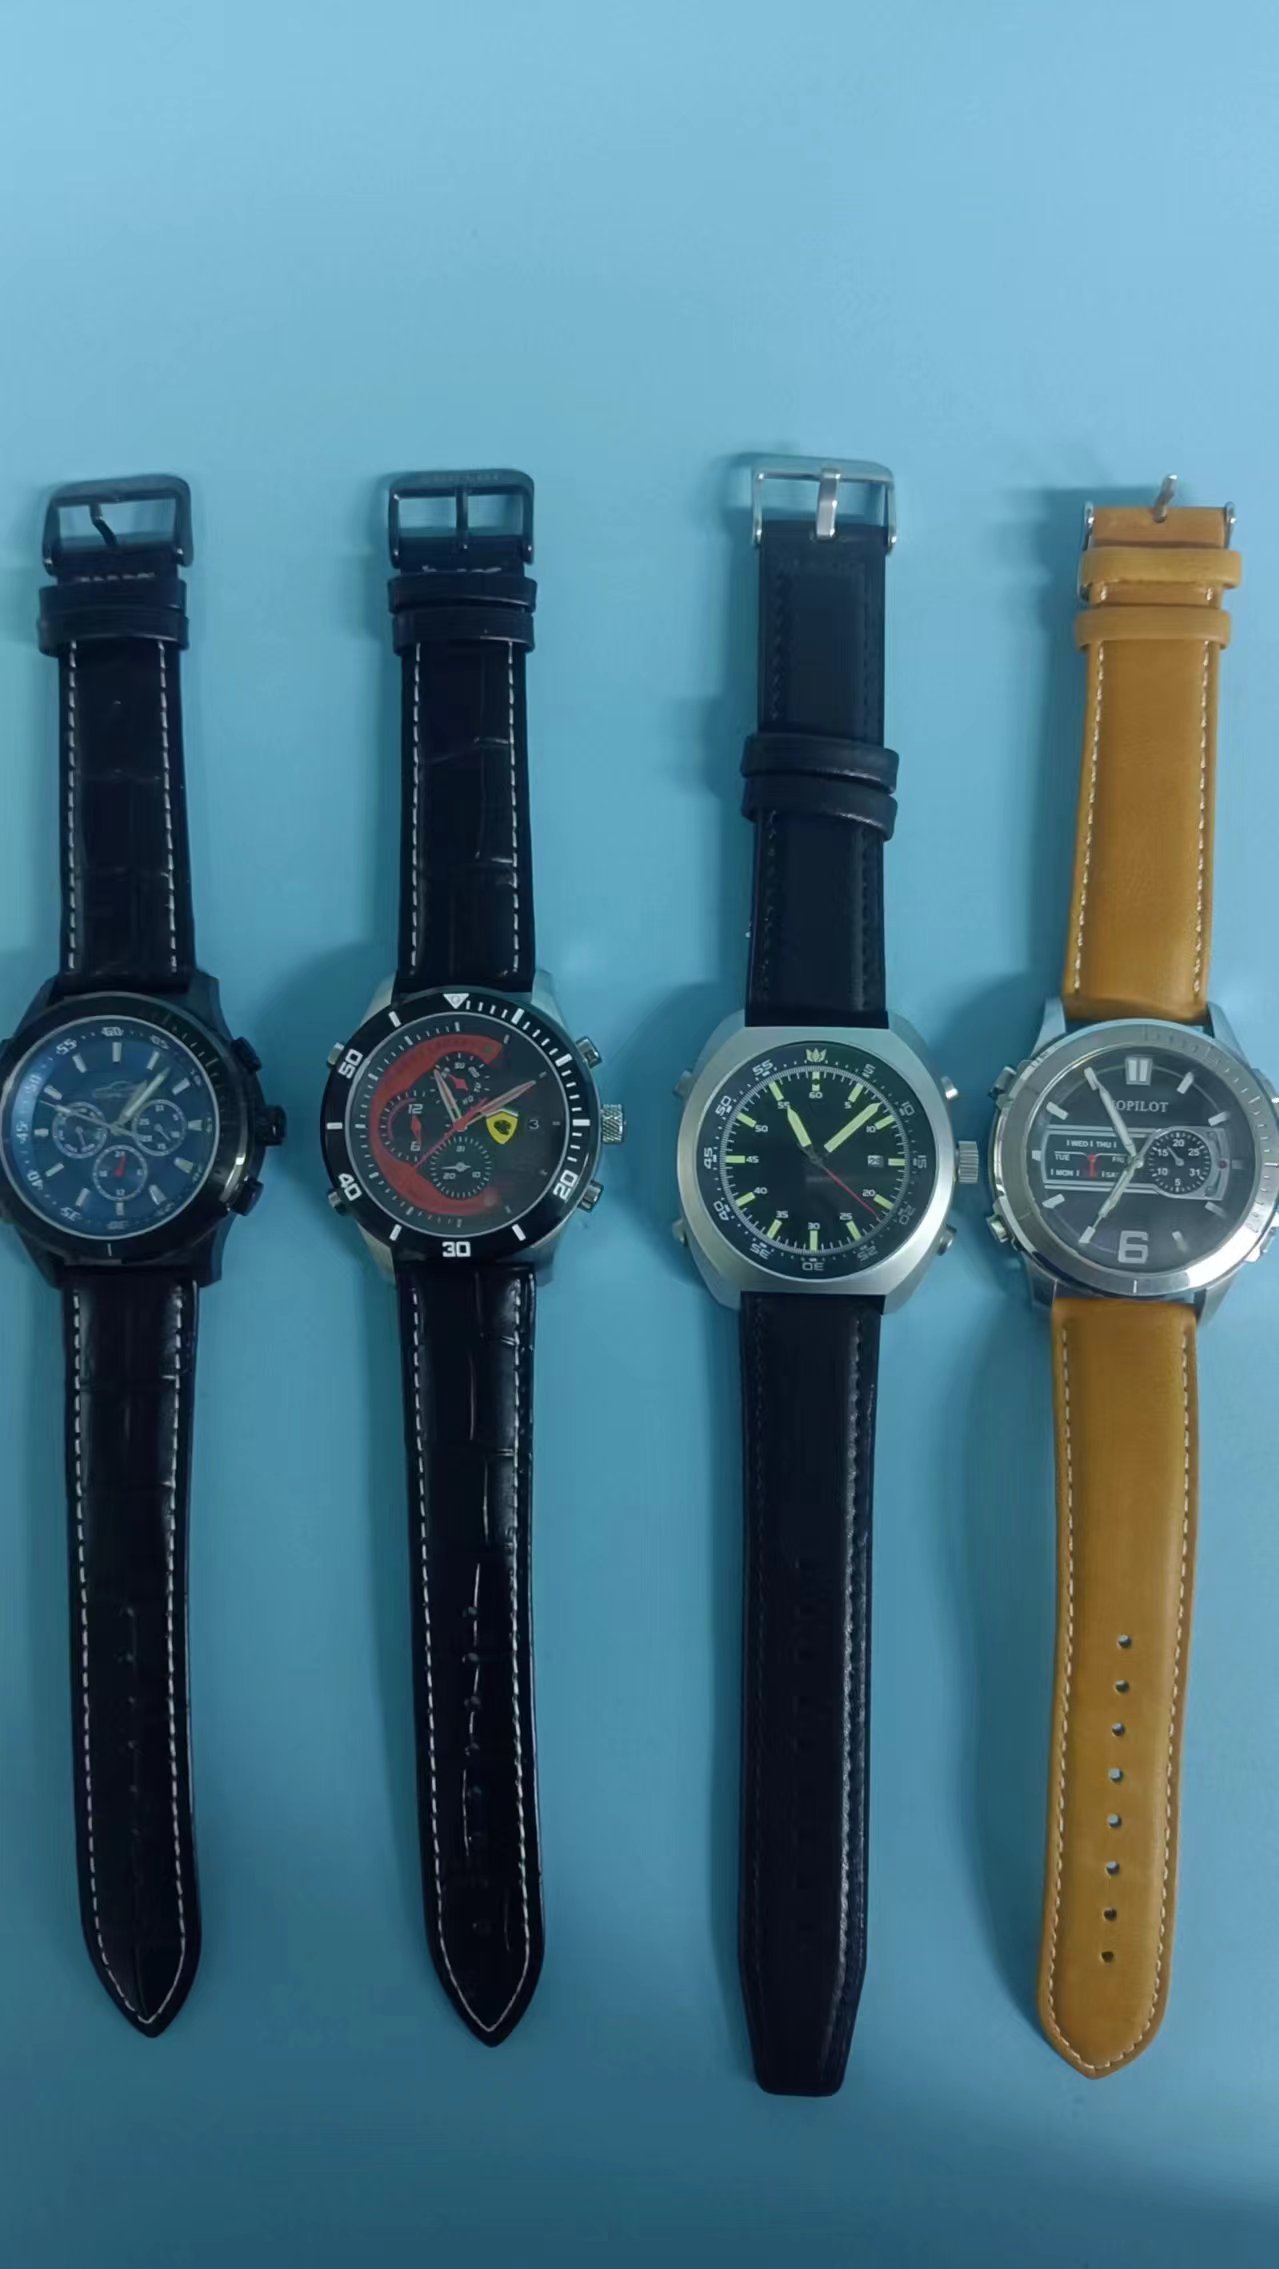 多功能钢表供应多功能钢表  商务手表  礼品记念手表   男士手表  女士韩流手表